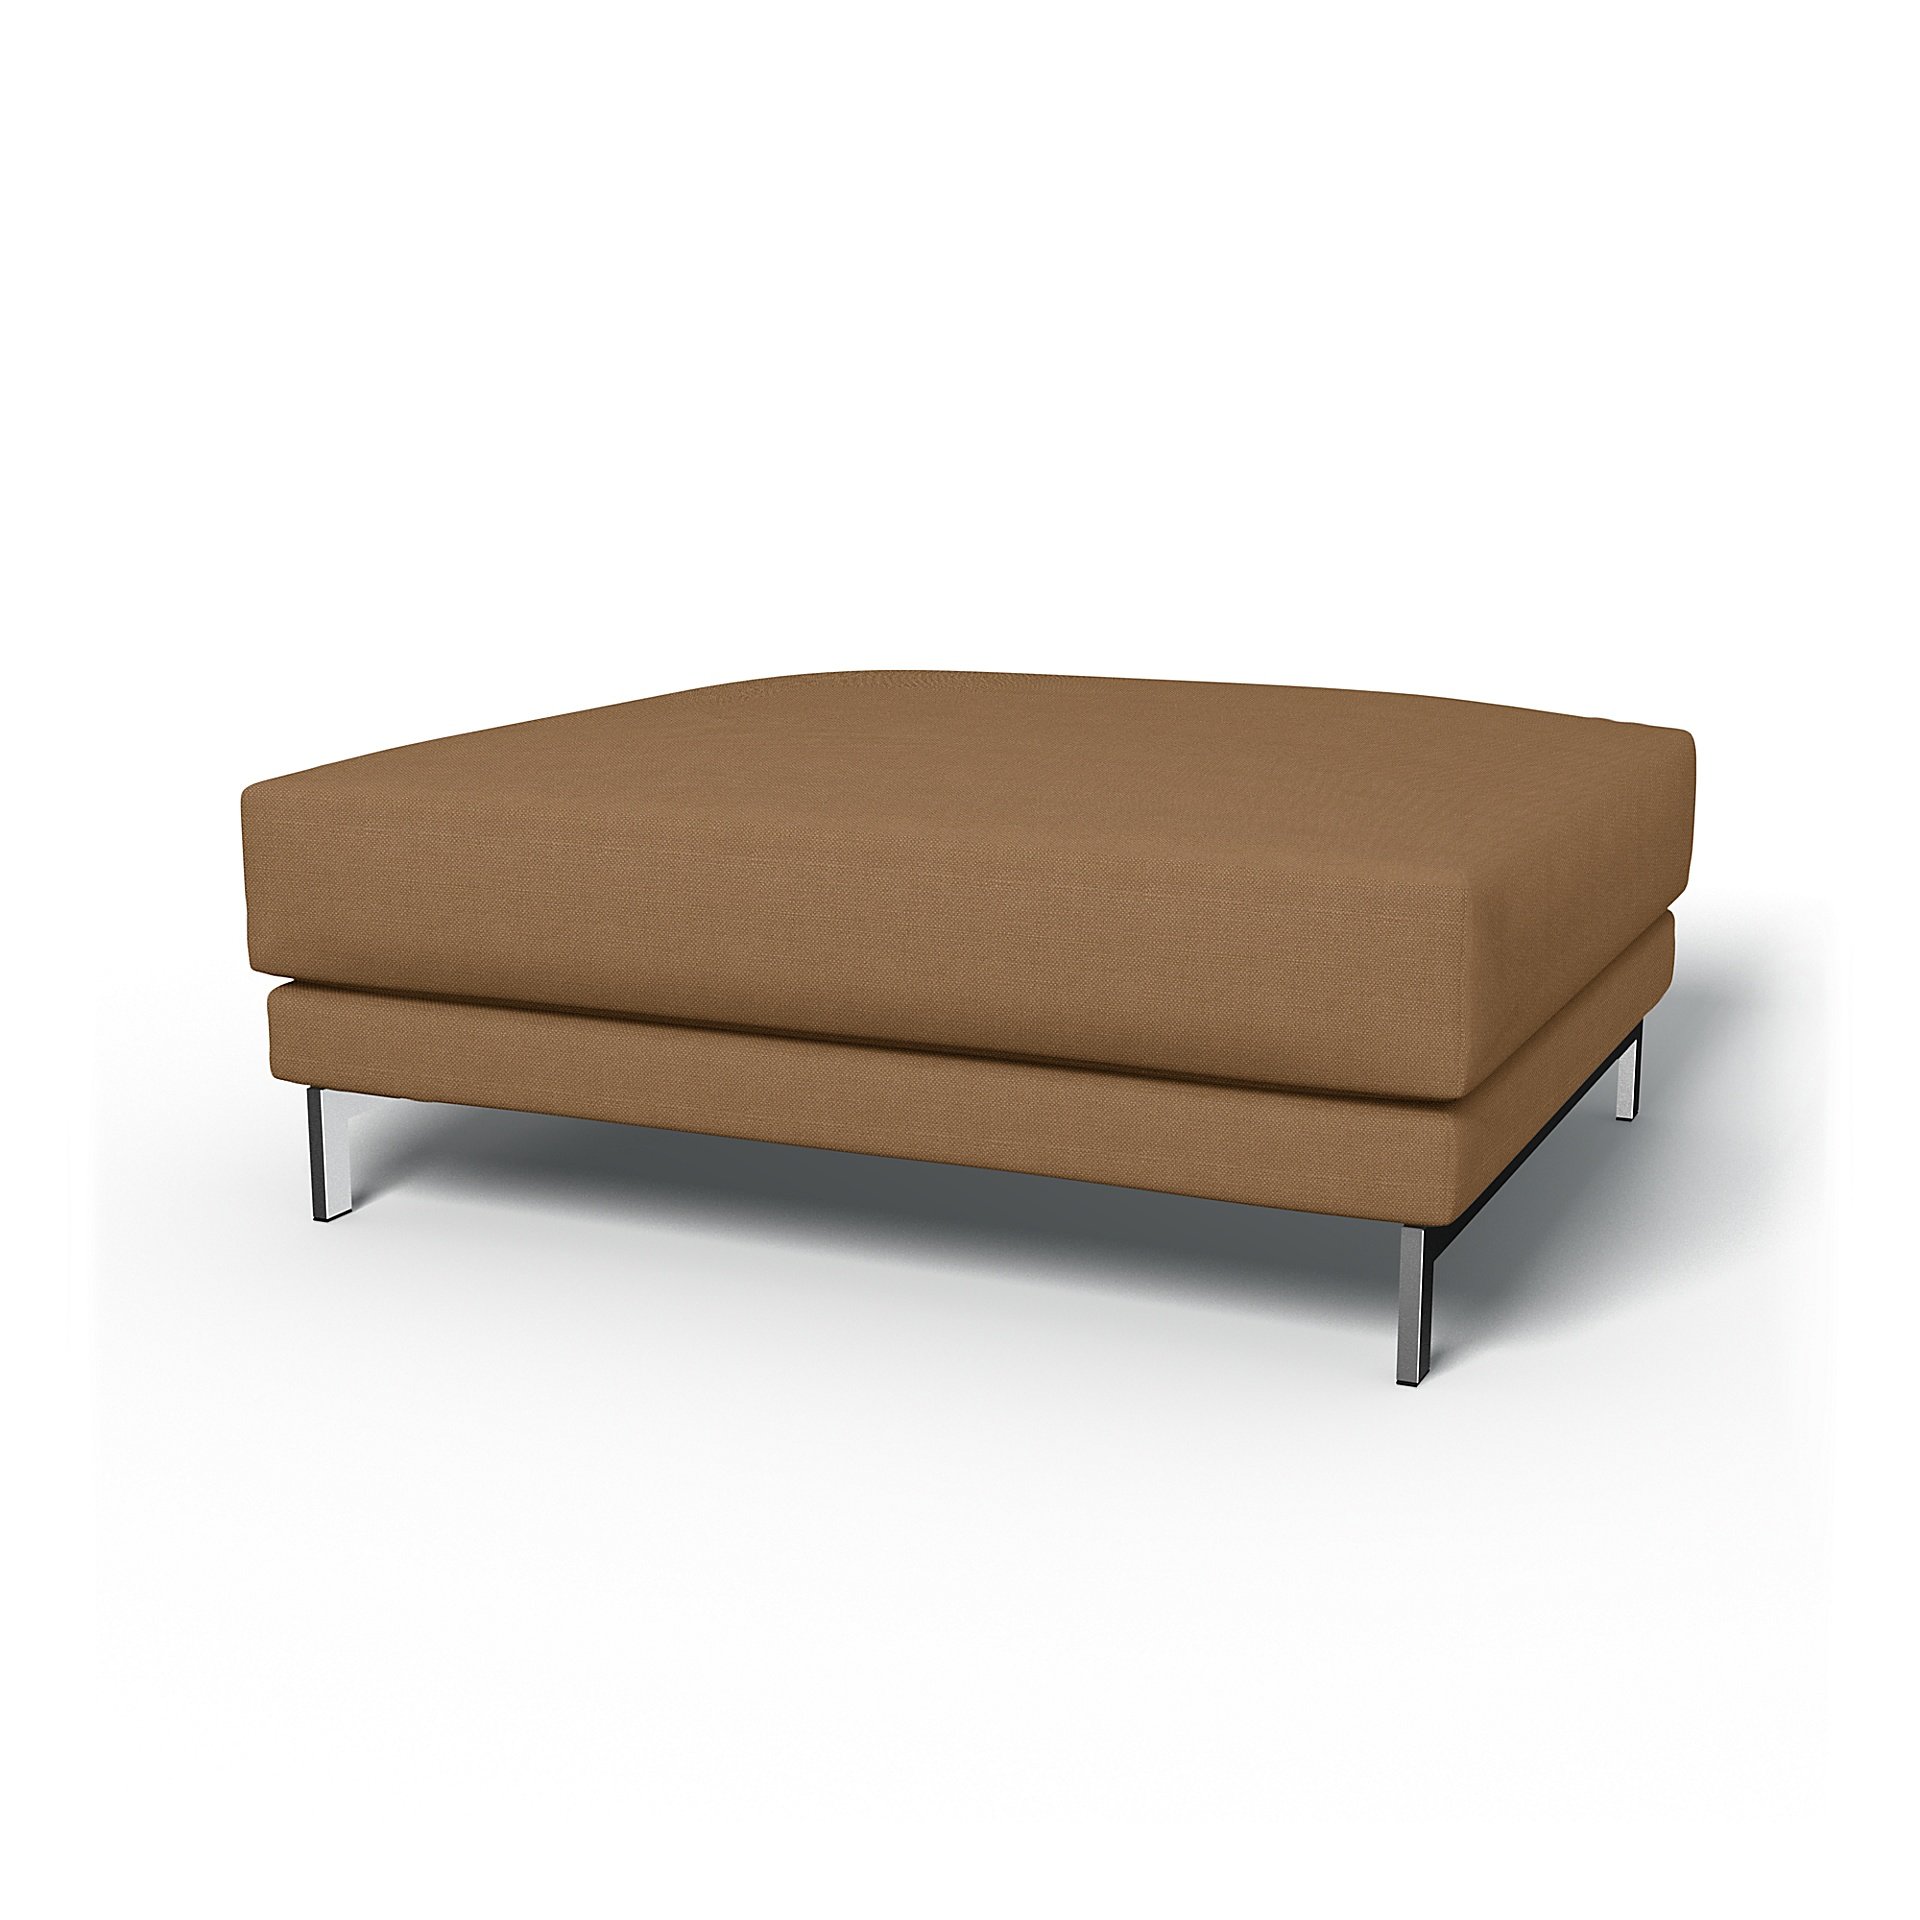 IKEA - Nockeby Footstool Cover, Nougat, Linen - Bemz